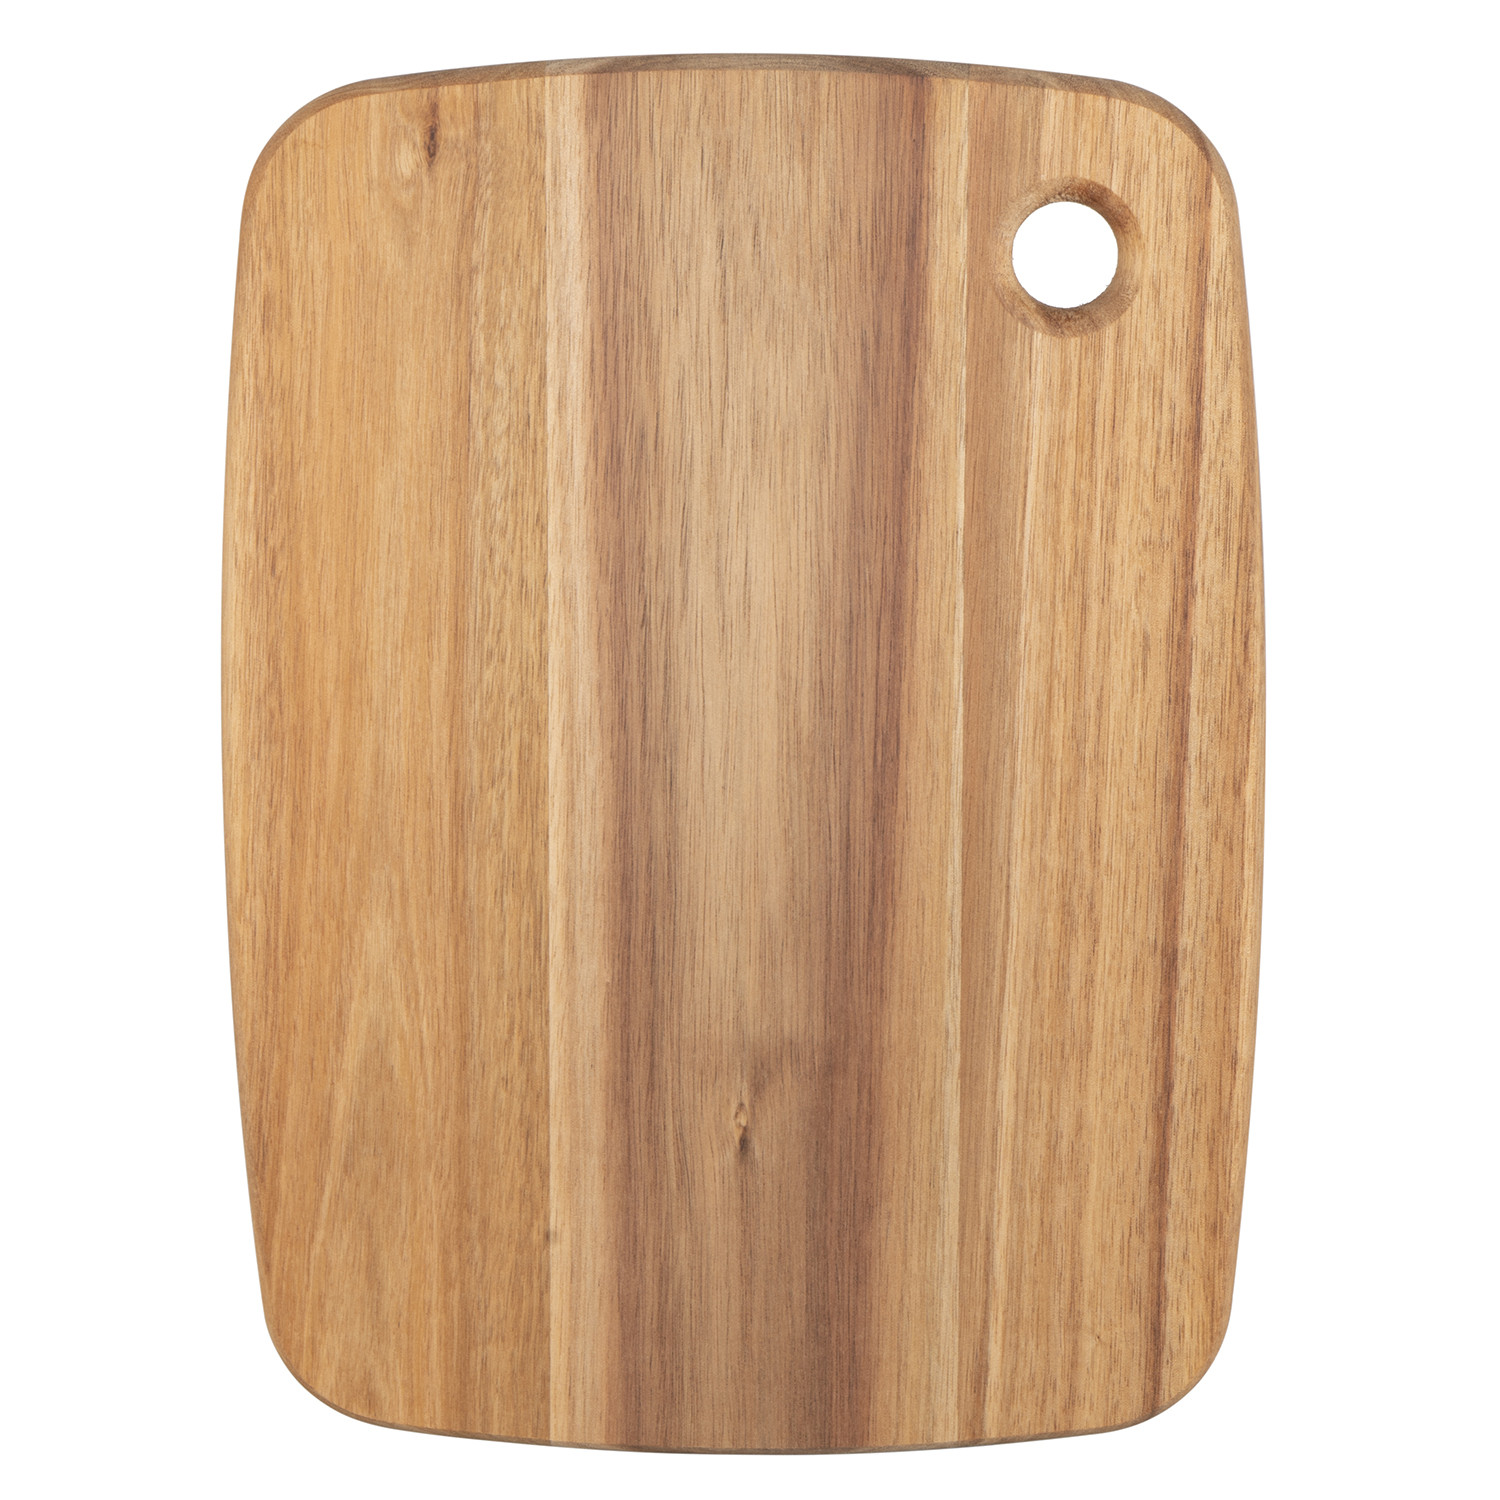 Small Acacia Wood Chopping Board Image 1